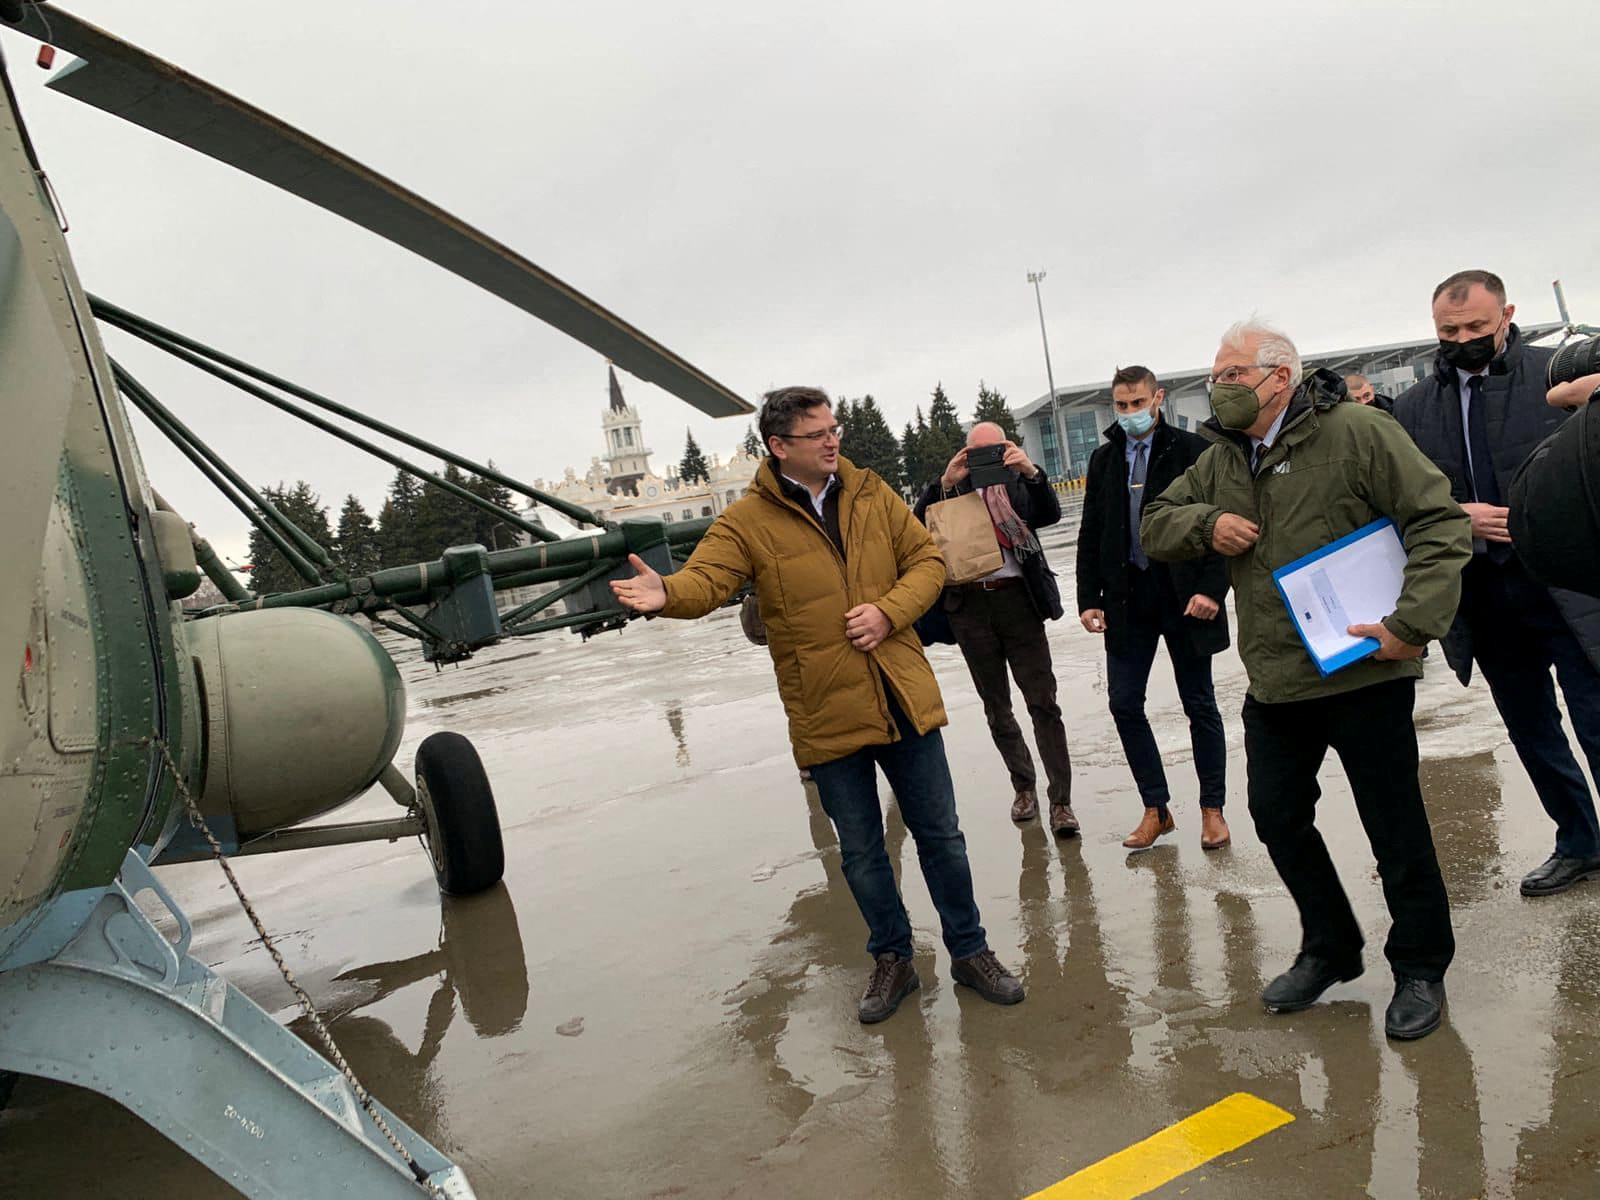 Le ministre ukrainien des Affaires étrangères Dmytro Kuleba et le haut représentant de l'Union européenne pour les affaires étrangères Josep Borrell montent à bord d'un hélicoptère pour se rendre dans l'est de la région de Luhansk, à l'aéroport de Kharkiv, en Ukraine, le 5 janvier 2022. Ministère ukrainien des Affaires étrangères/Document via REUTERS